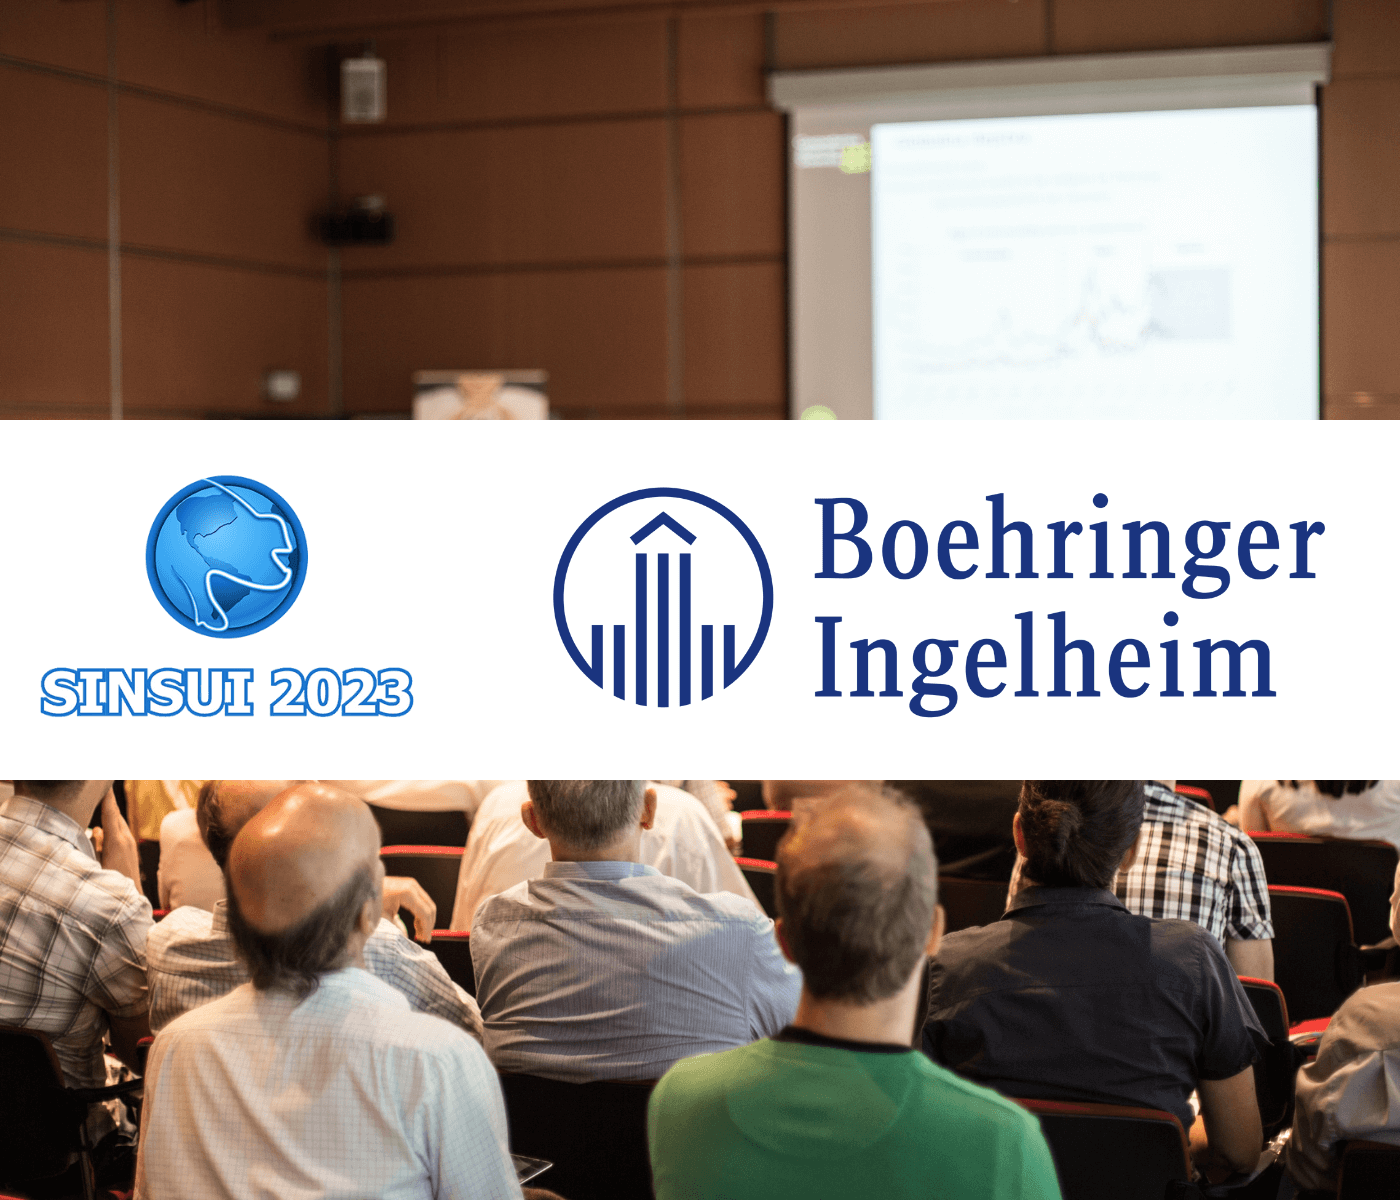  Boehringer Ingelheim confirma participação no SINSUI 2023 e destaca compromisso com a ciência e educação através do lançamento do “Guia de necropsia e patologia de suínos” no simpósio